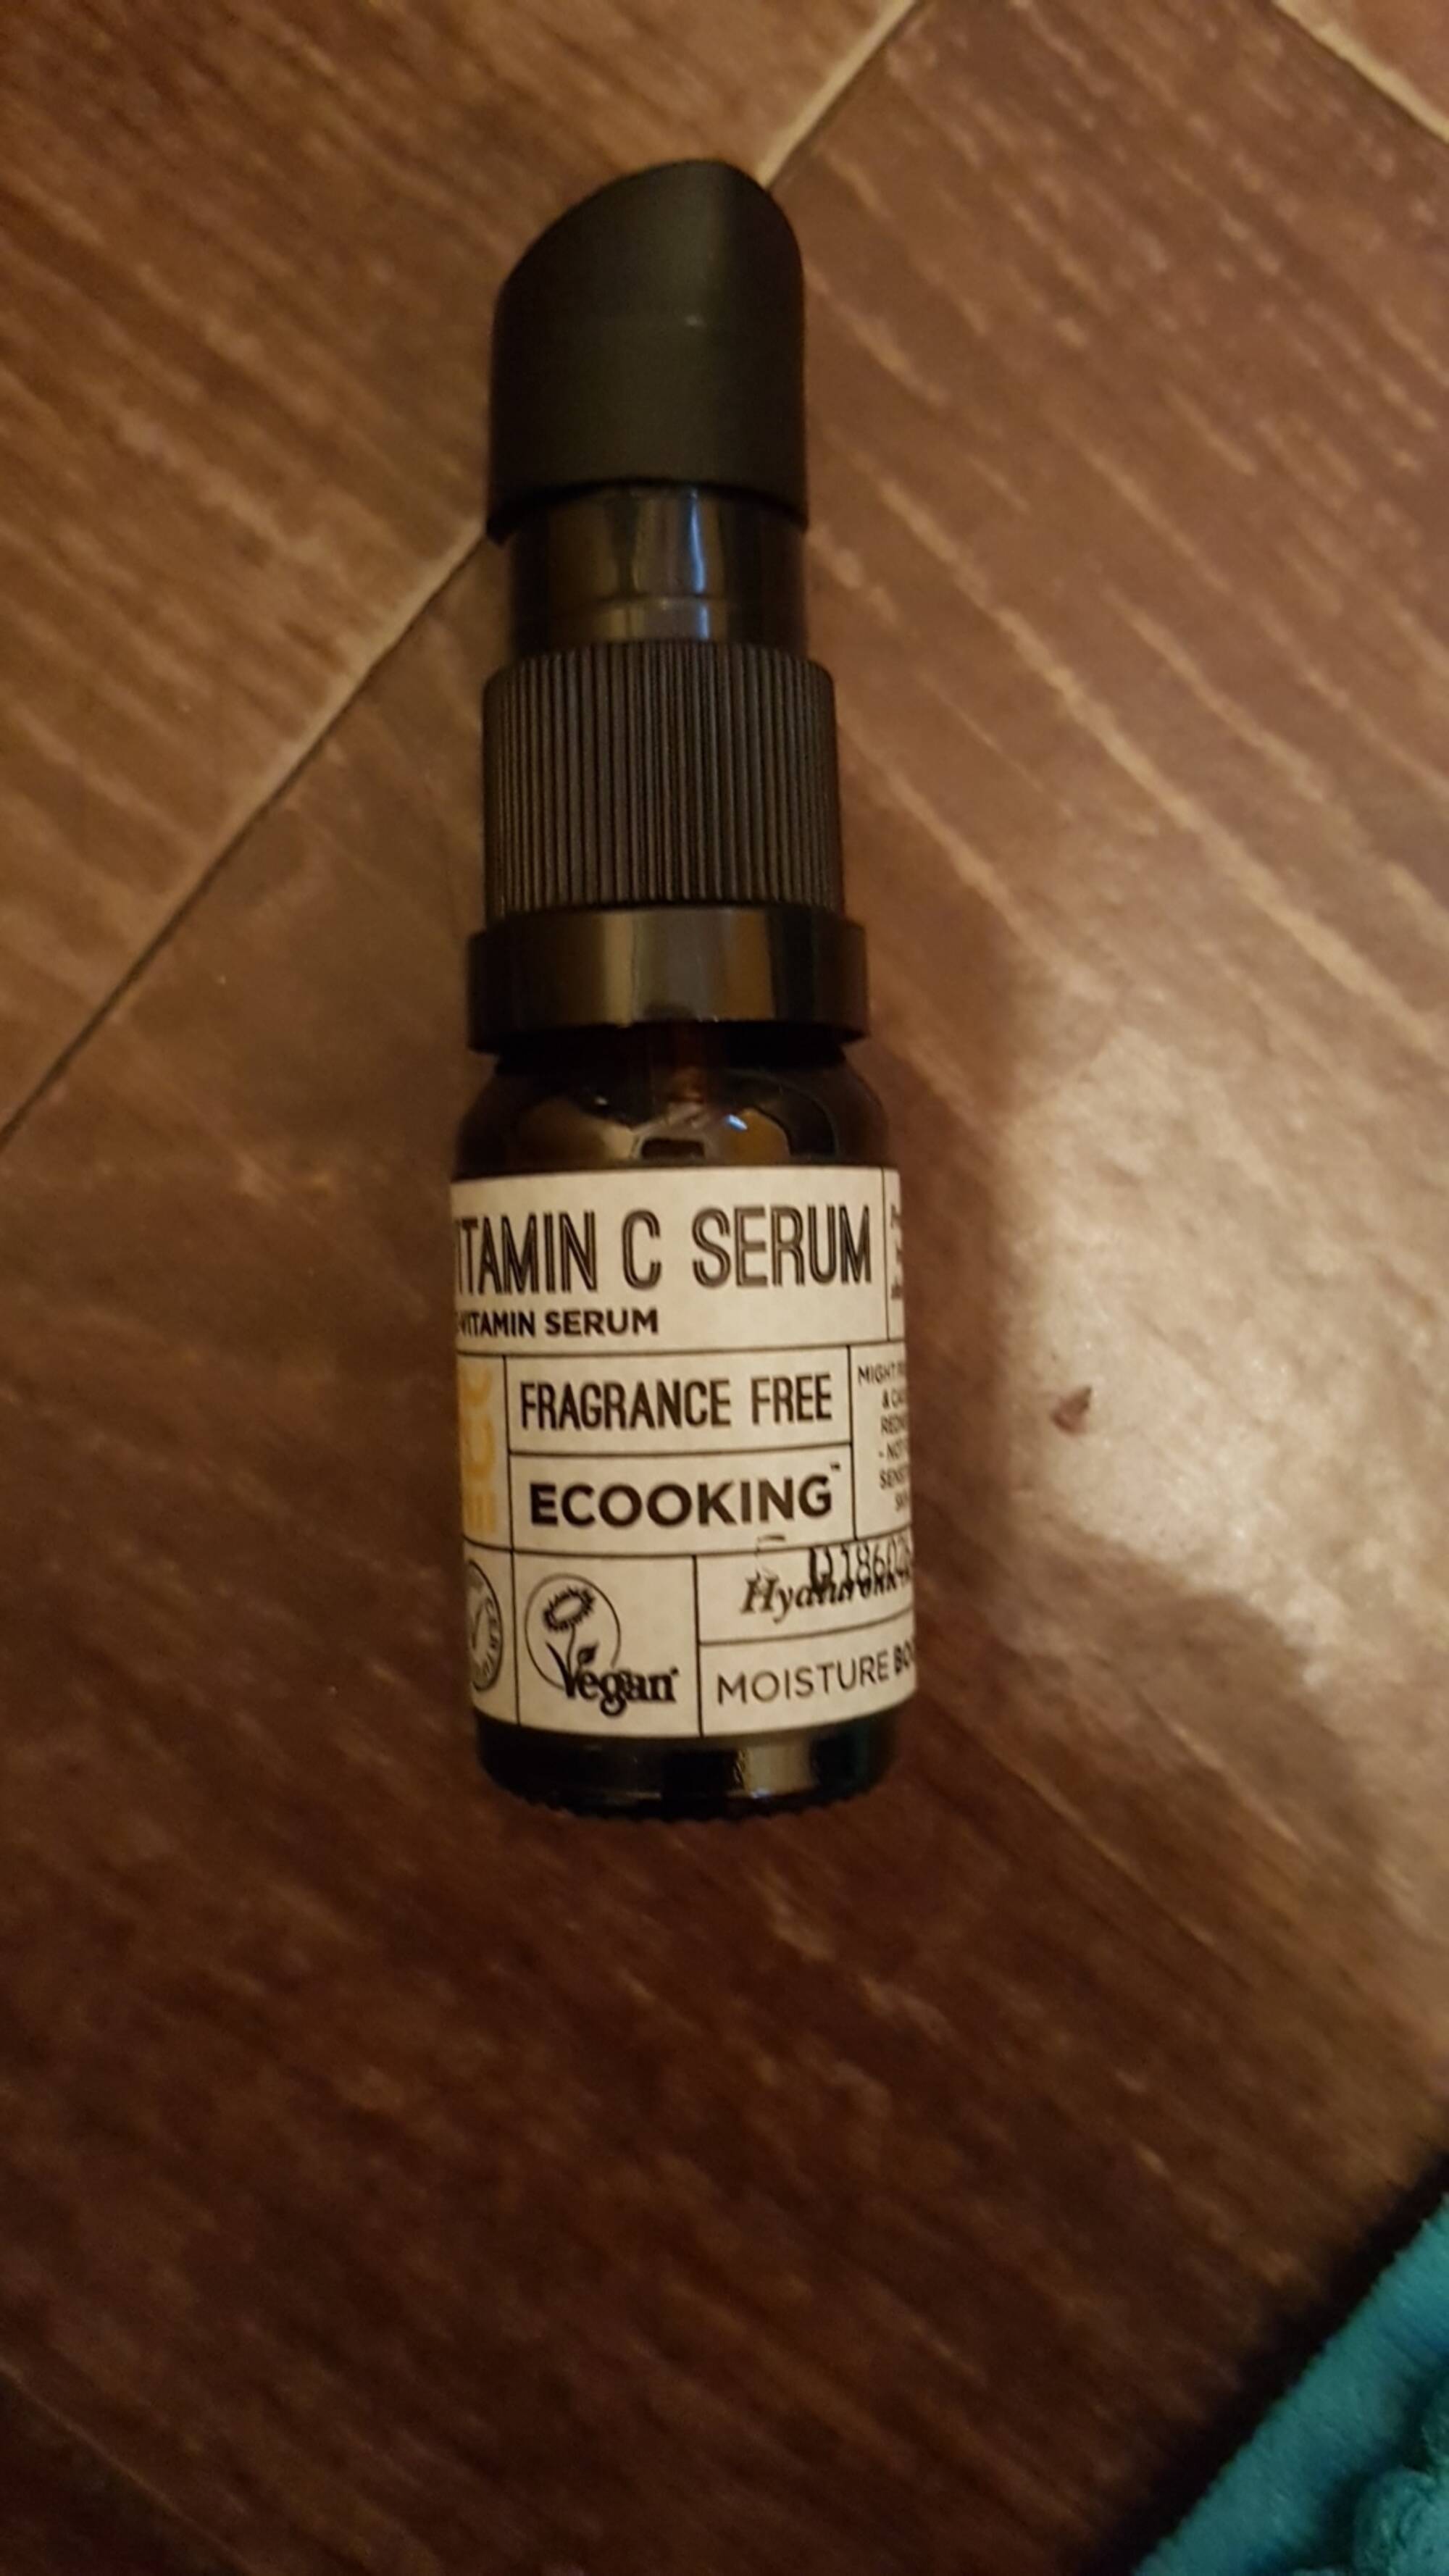 ECOOKING - Vitamin C Serum